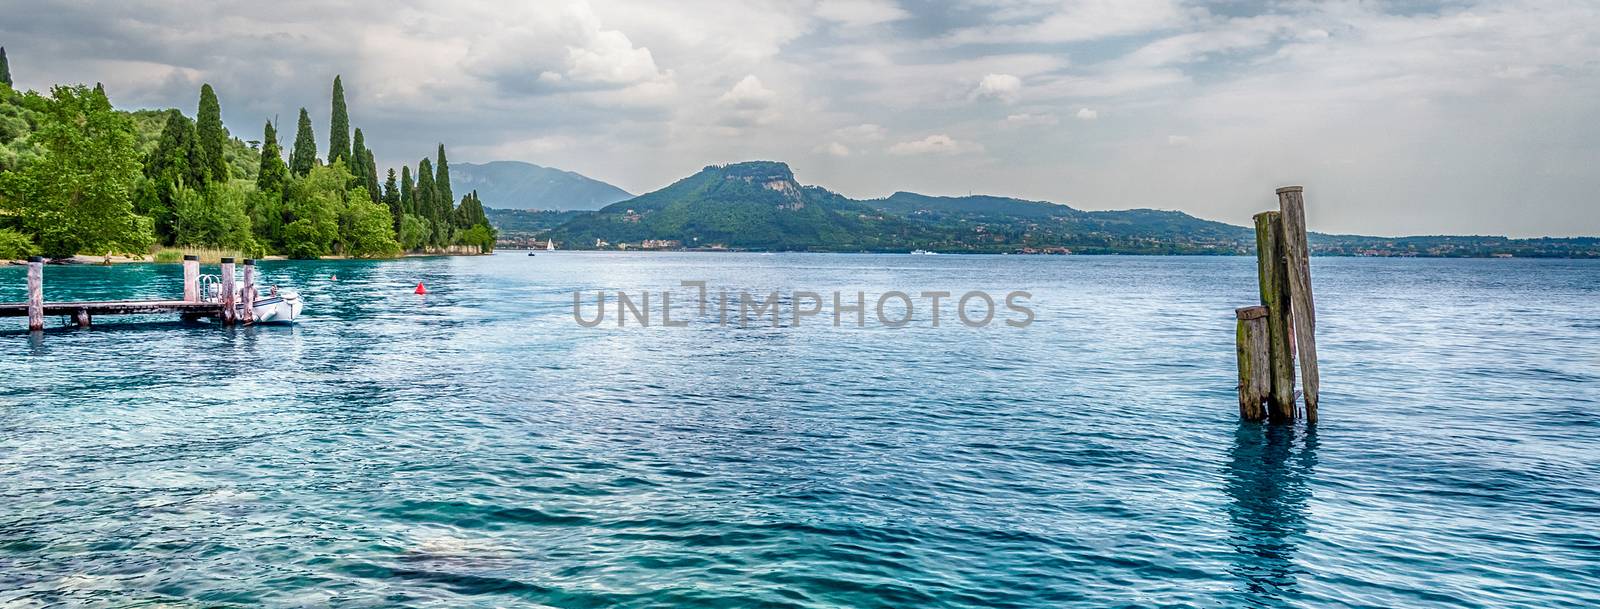 Lake Garda at Punta San Vigilio, Town of Garda, Italy by marcorubino